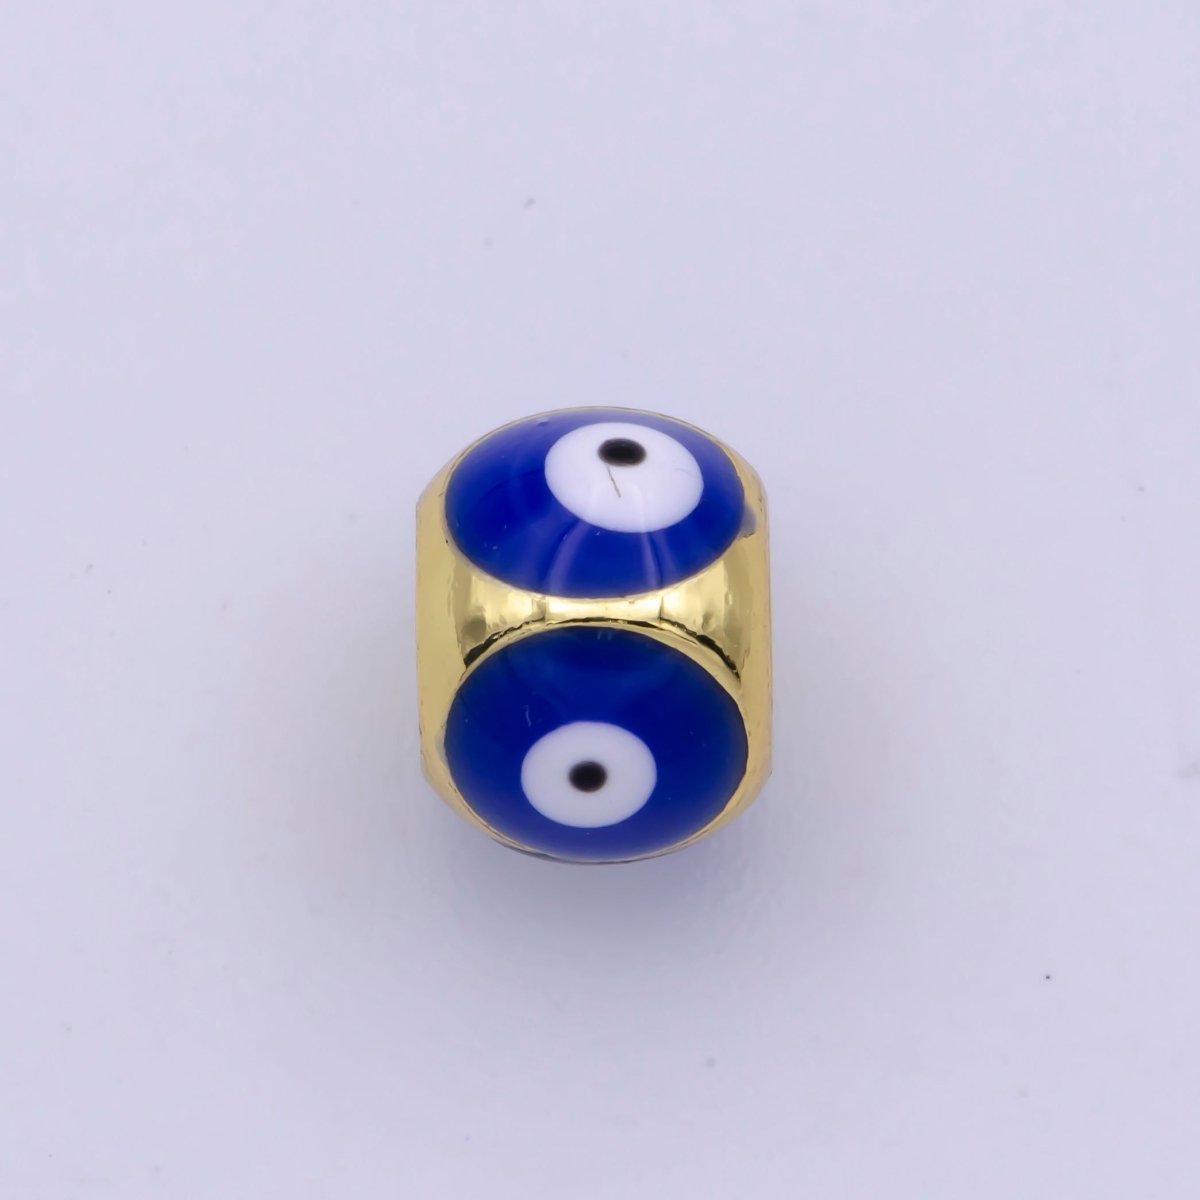 Shiny Gold Filled Evil Eye Beads, Blue White Enamel Evil Eye Spacer Bead Charm Connector for Bracelet B-663 to B-666 - DLUXCA